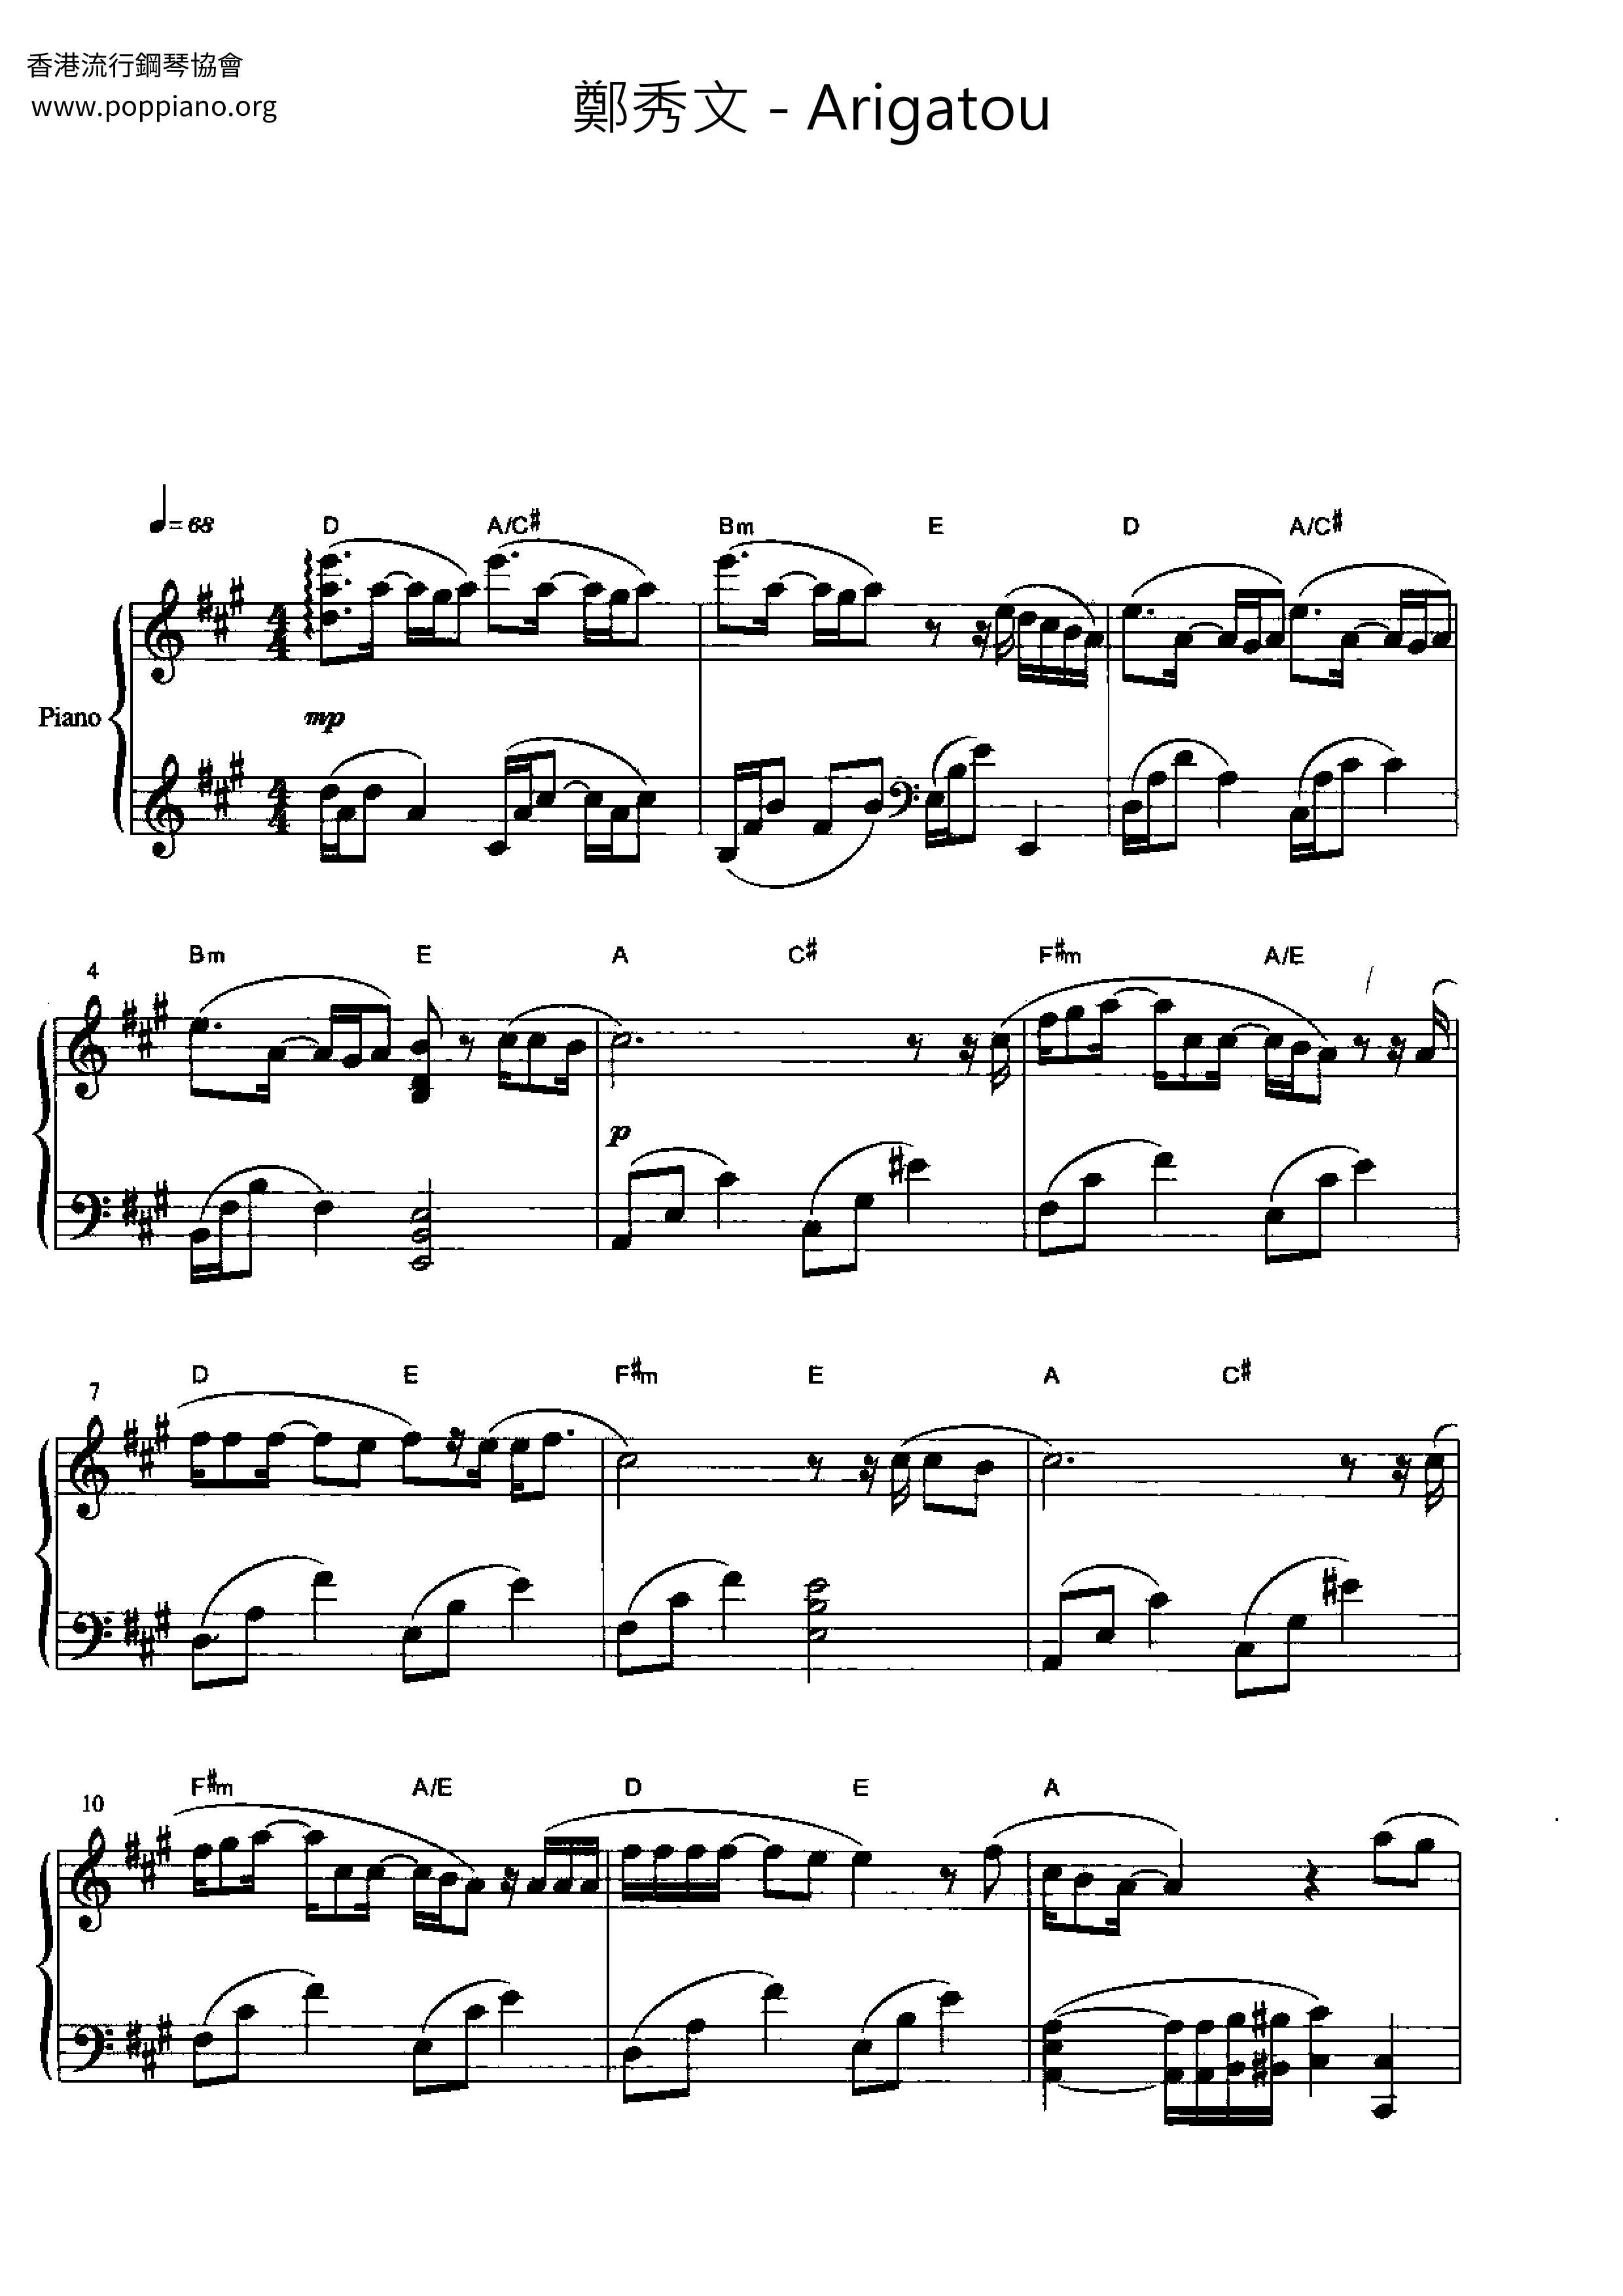 Arigatouピアノ譜